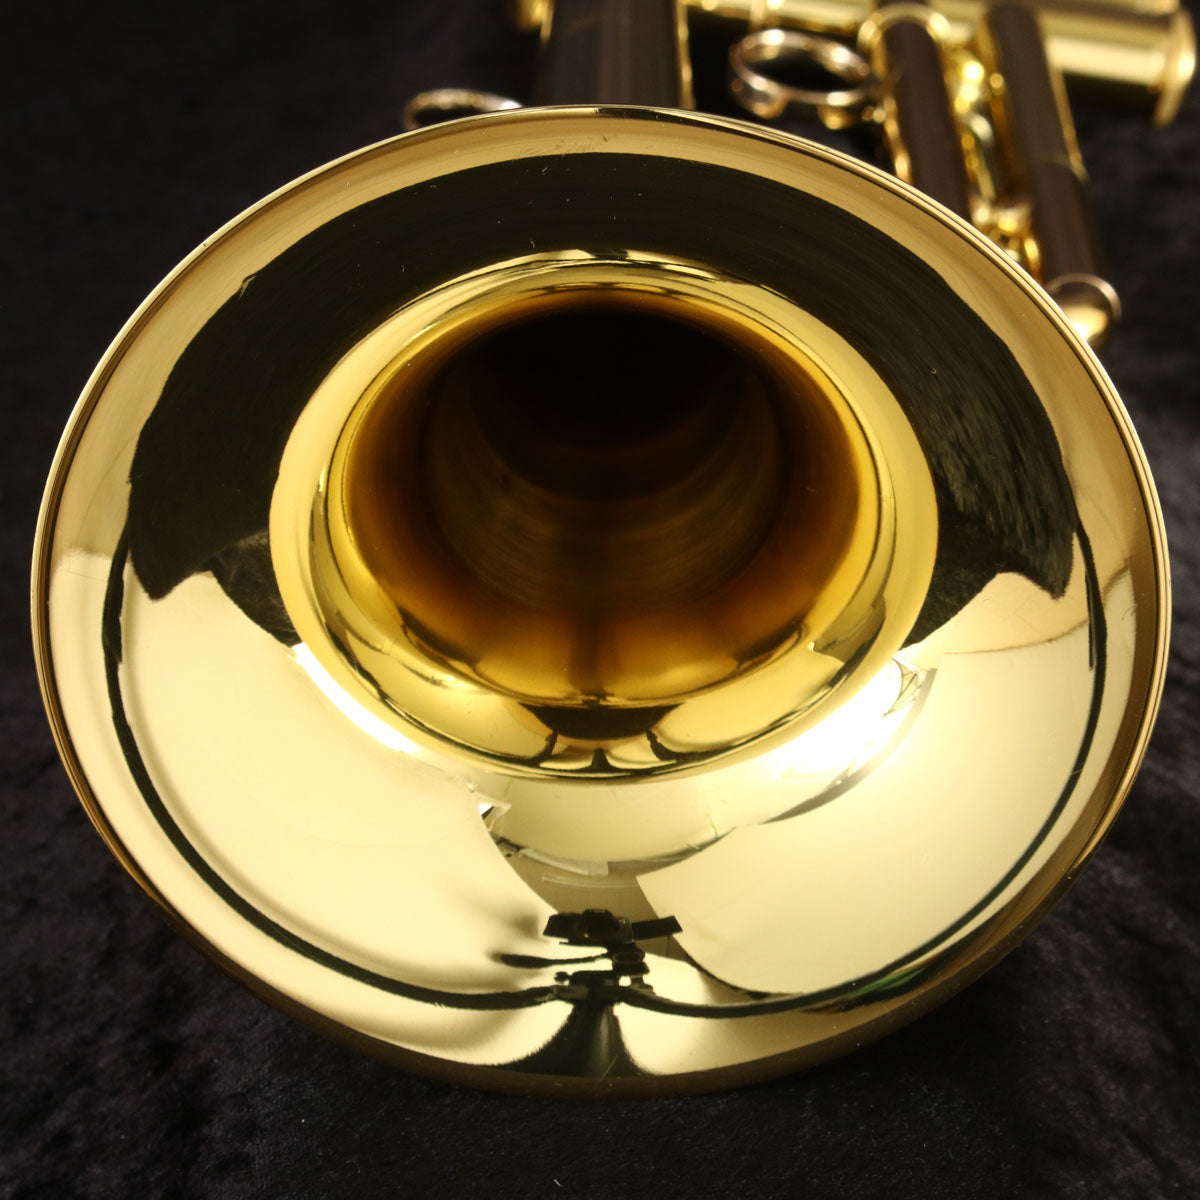 [SN C64158] USED YAMAHA / Trumpet YTR-8340EM Eric Miyashiro model [03]